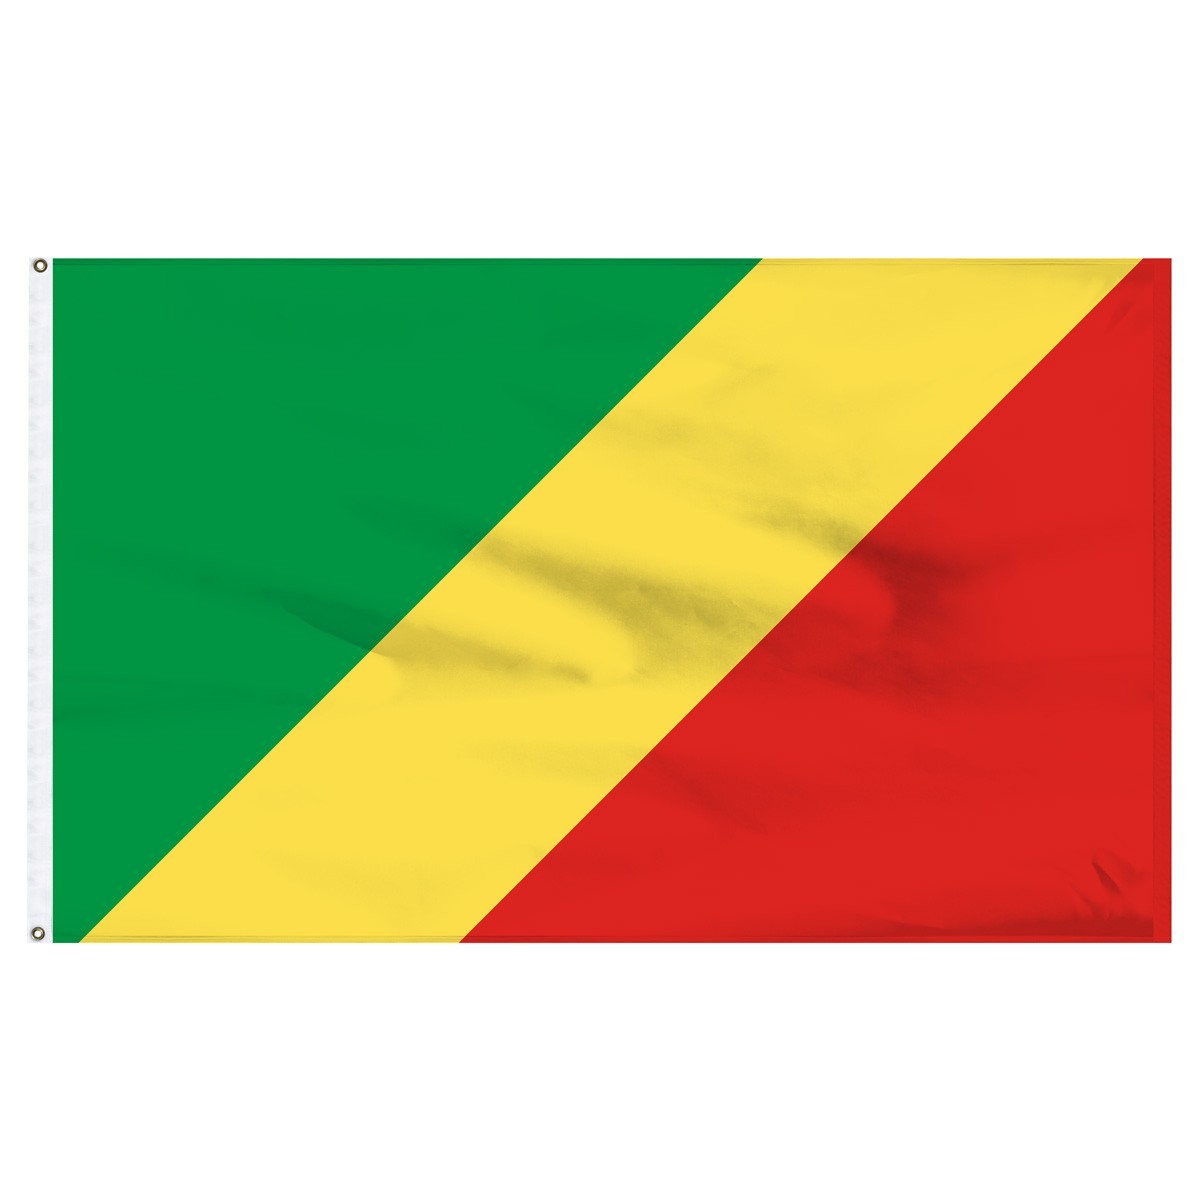 Congo 5' x 8' Outdoor Nylon Flag